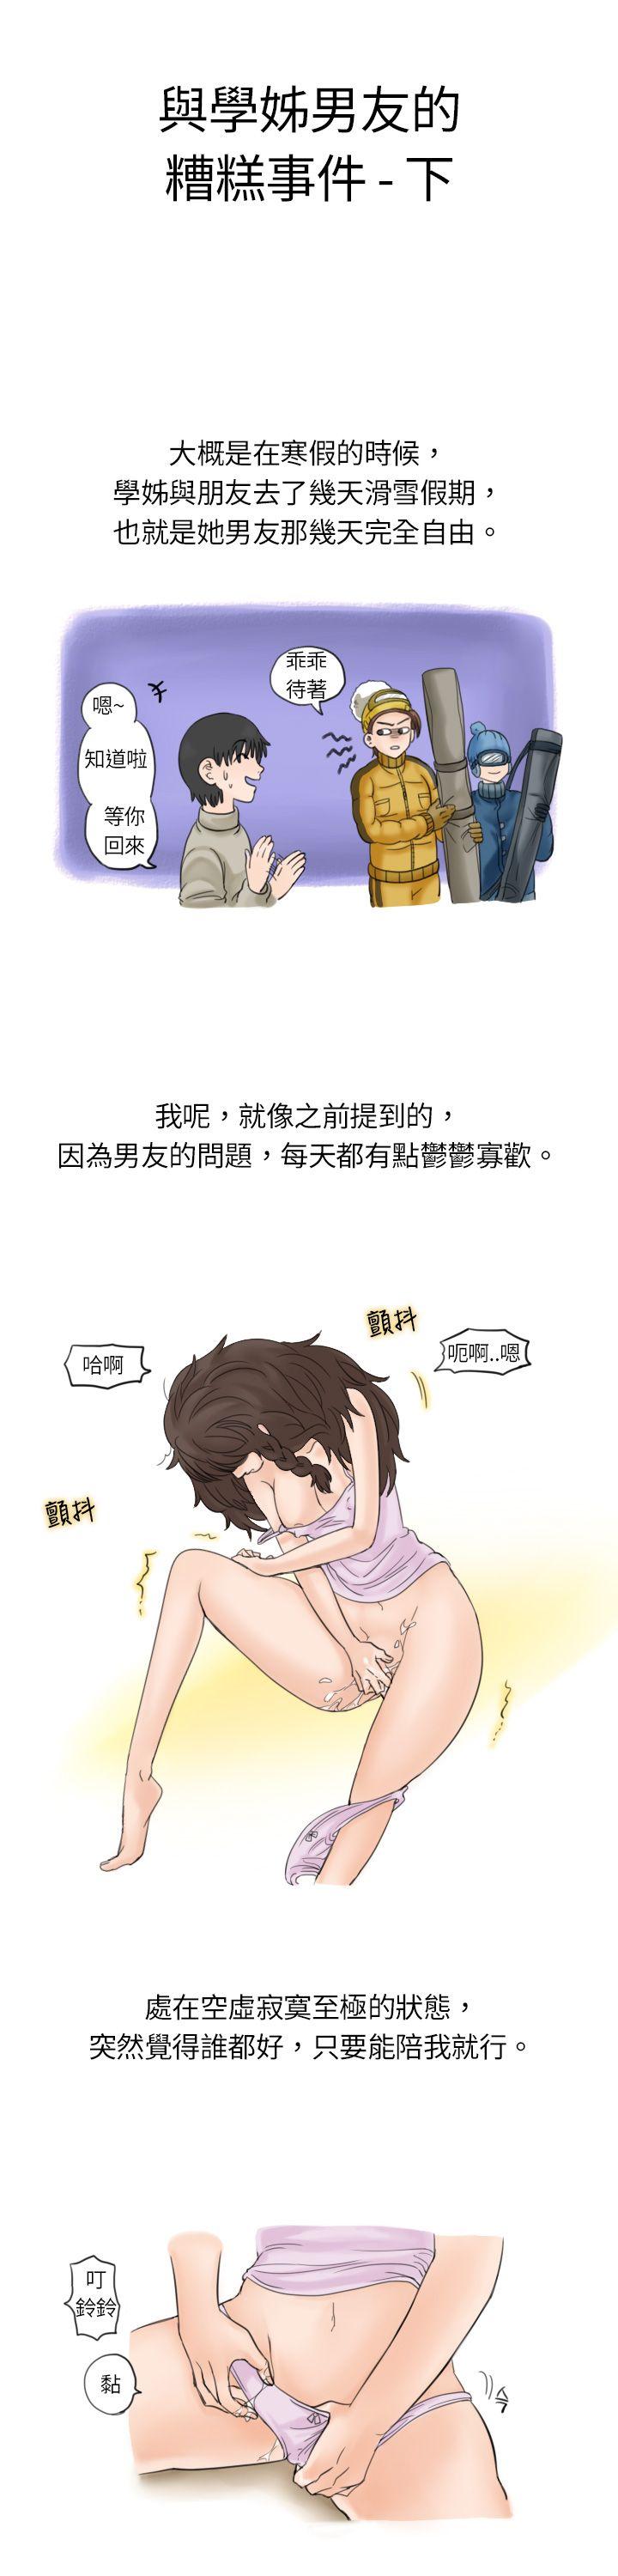 韩国污漫画 秘密Story 与学姊男友的糟糕事件(下) 1